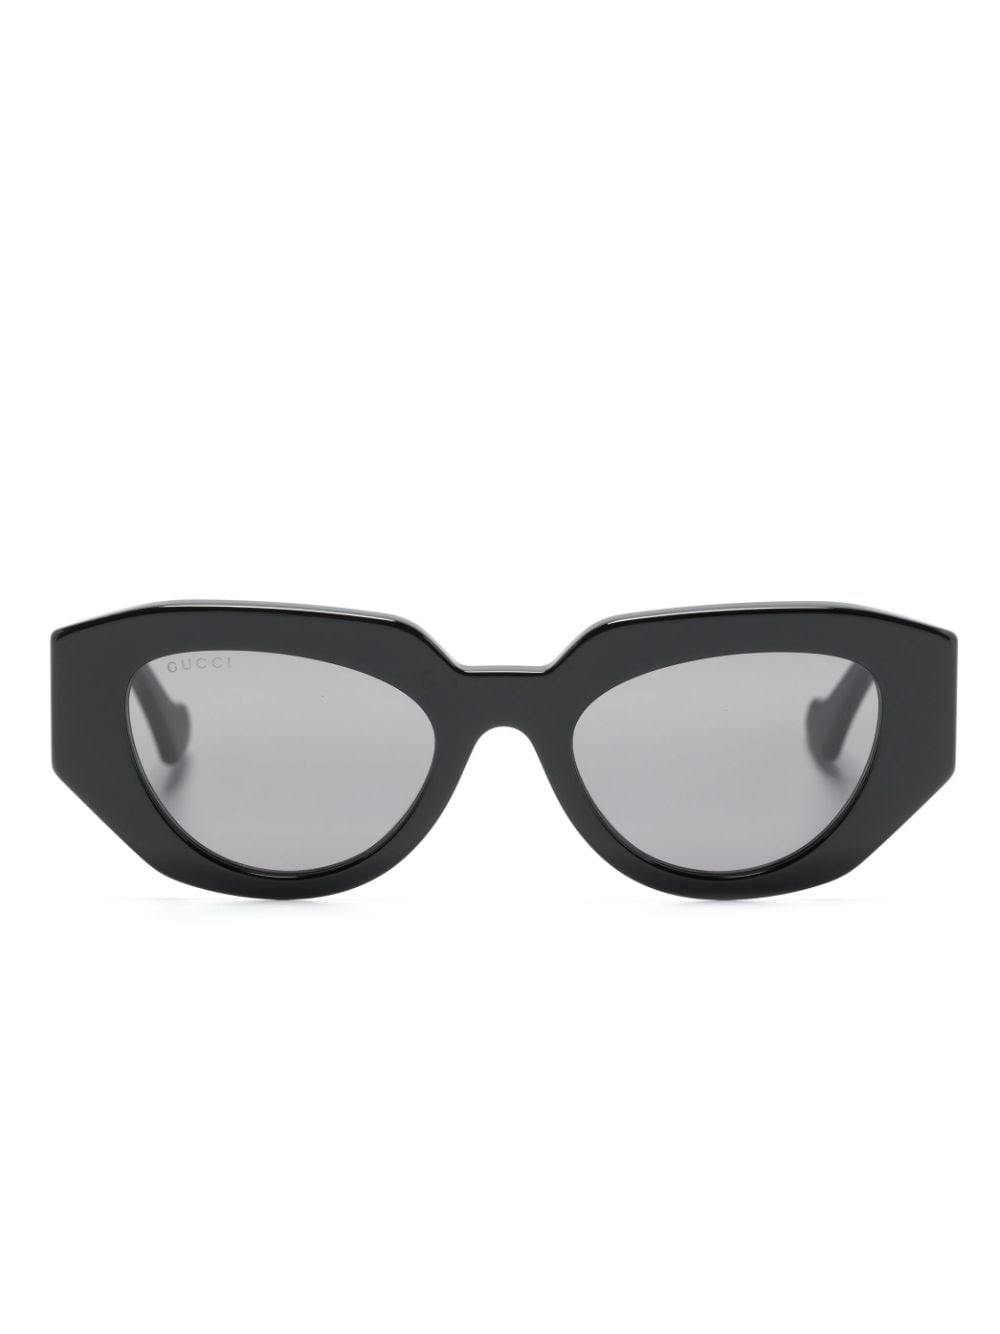 Gucci Eyewear Sonnenbrille mit ovalem Gestell - Schwarz von Gucci Eyewear